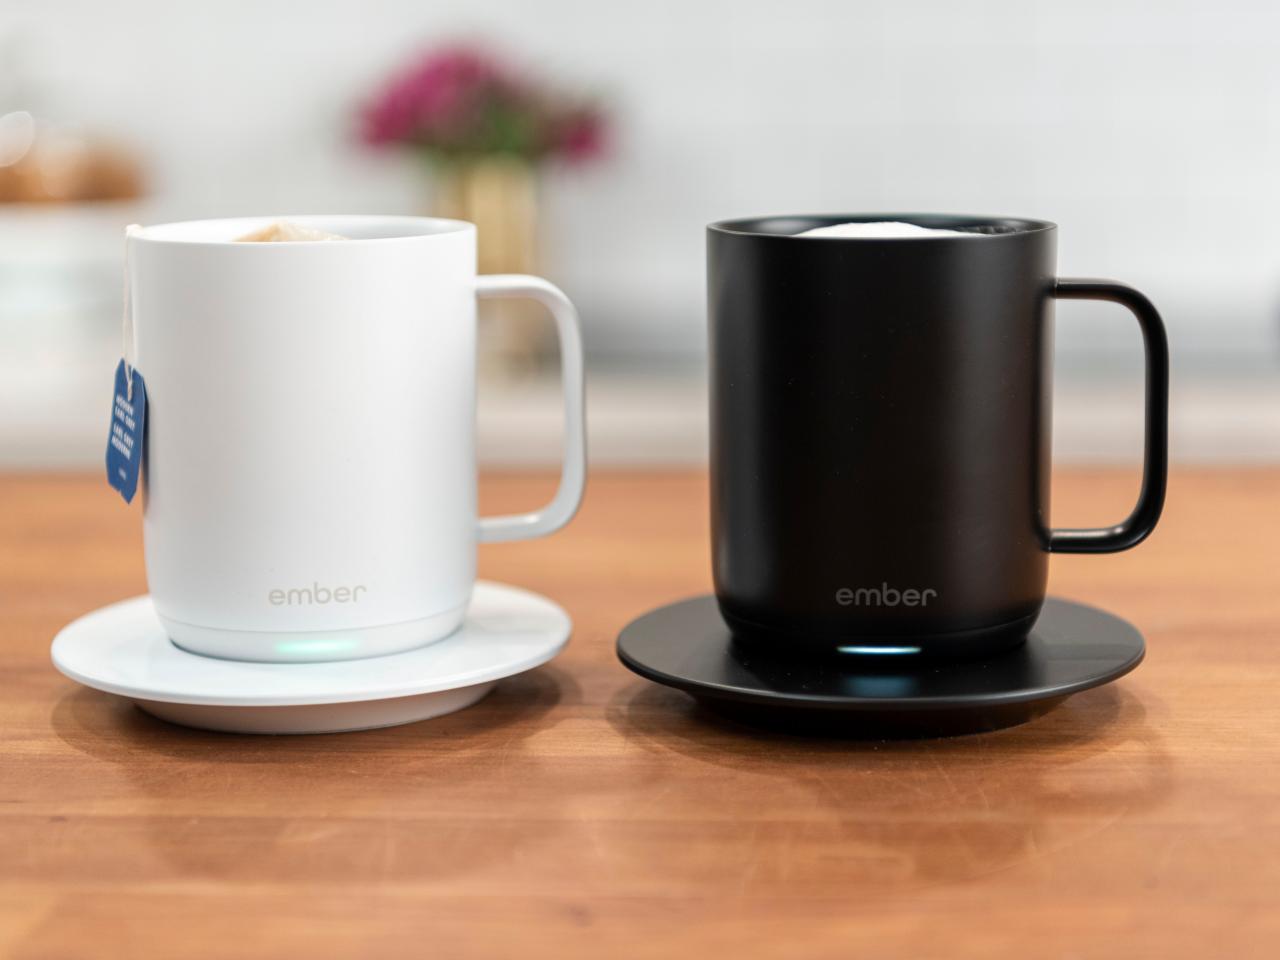 Ember Ceramic Mug review: Ember's new smart coffee mug dials up